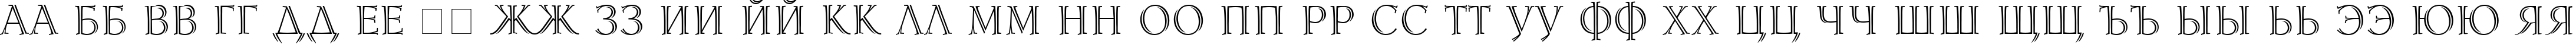 Пример написания русского алфавита шрифтом Lidia Cyr